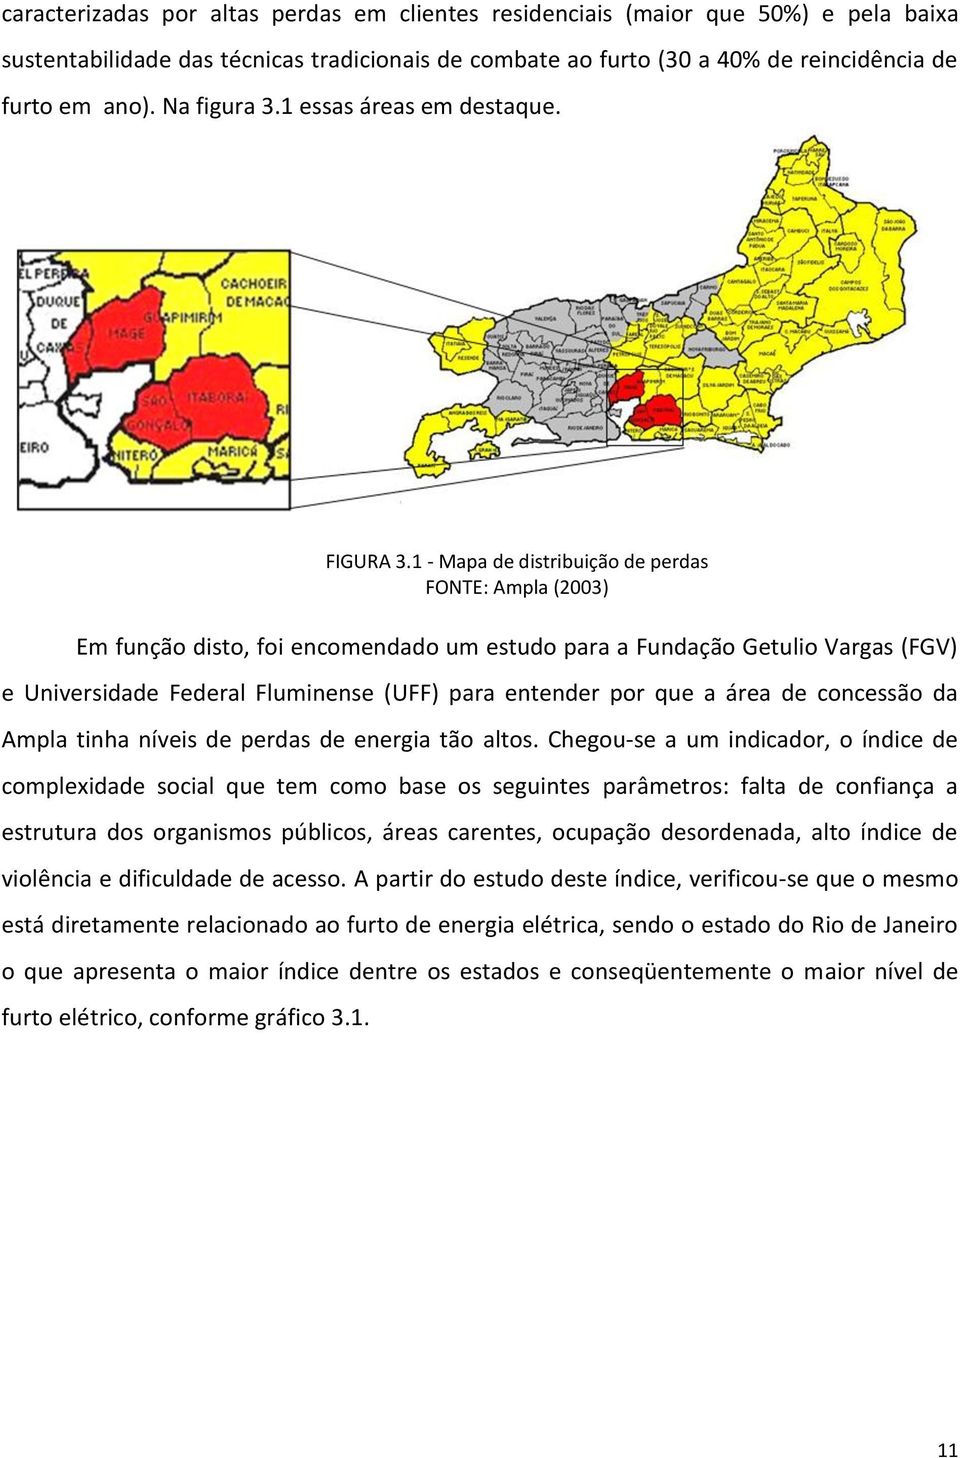 1 - Mapa de distribuição de perdas FONTE: Ampla (2003) Em função disto, foi encomendado um estudo para a Fundação Getulio Vargas (FGV) e Universidade Federal Fluminense (UFF) para entender por que a